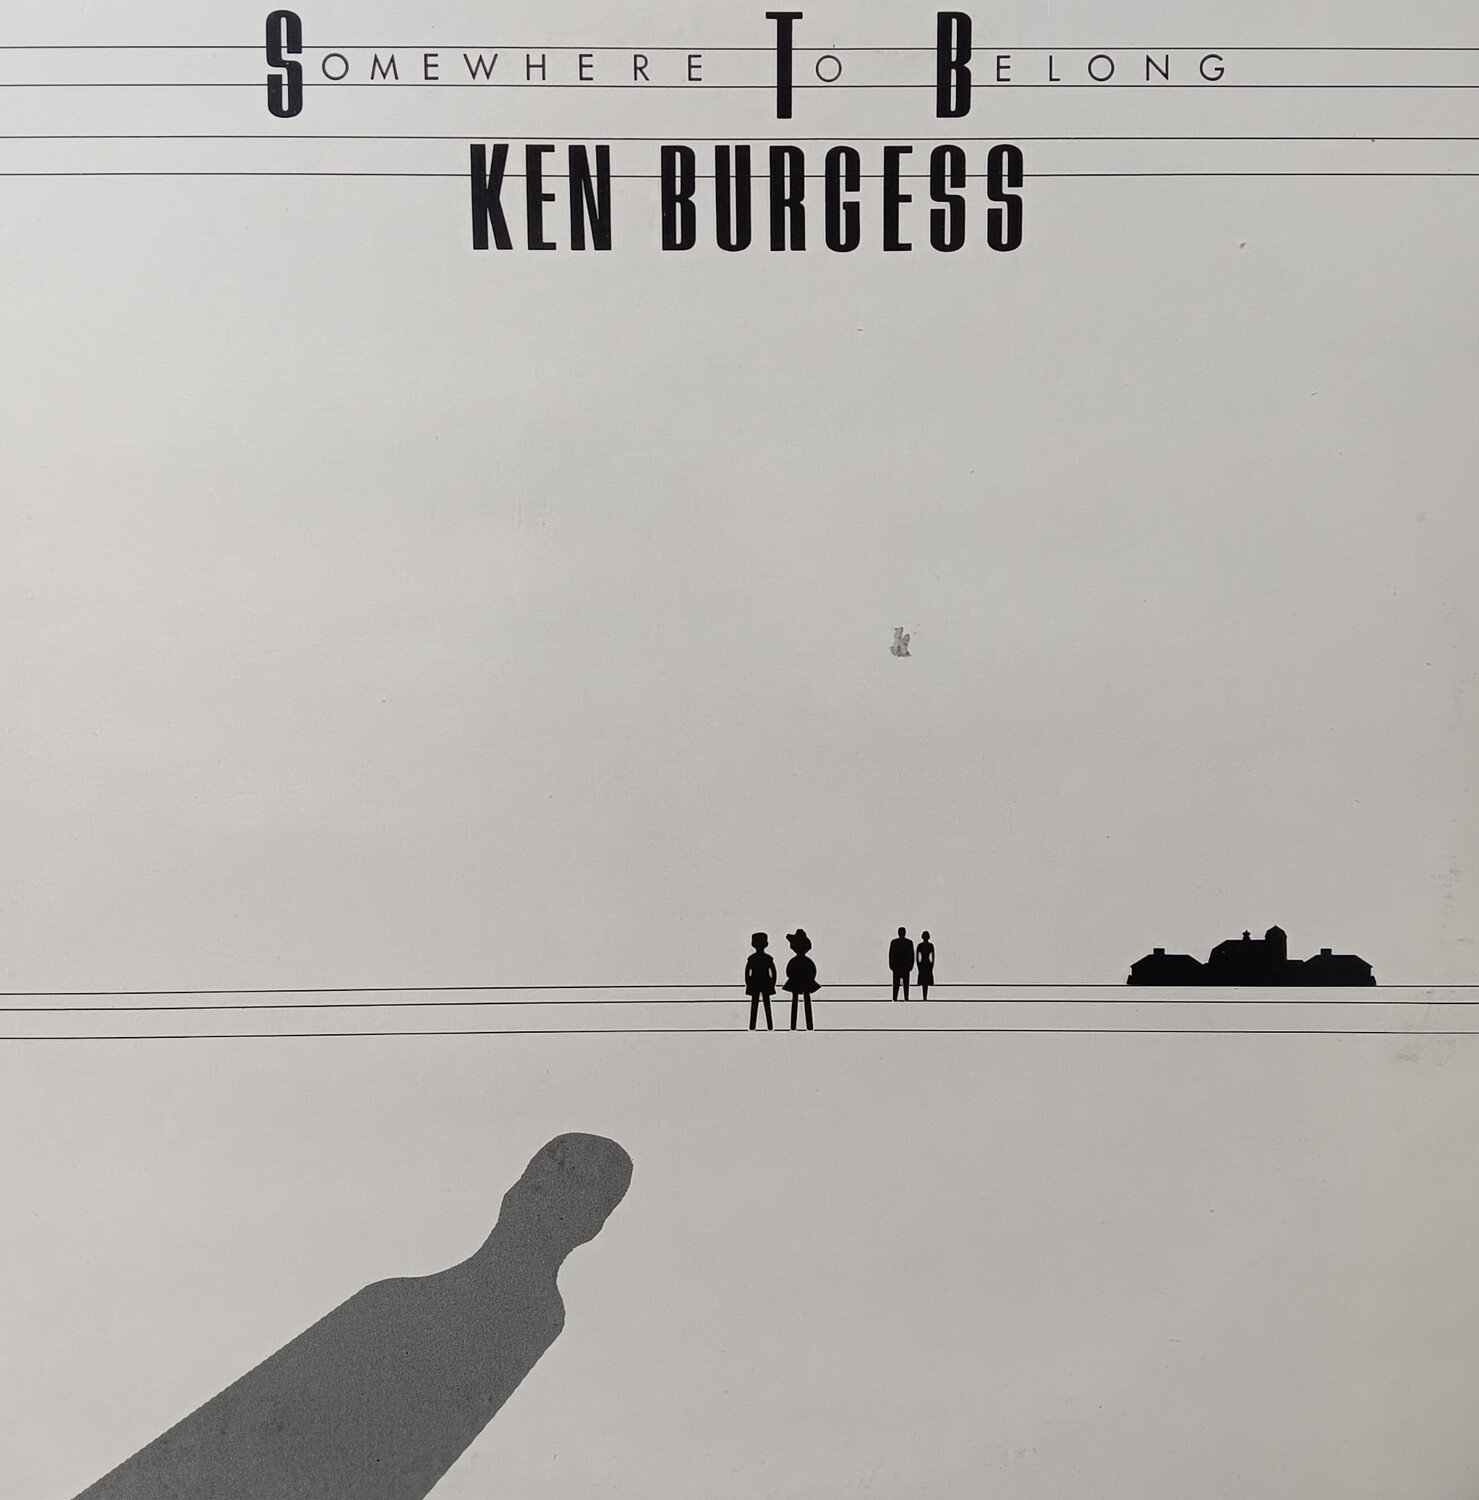 KEN BURGESS - Somewhere to belong